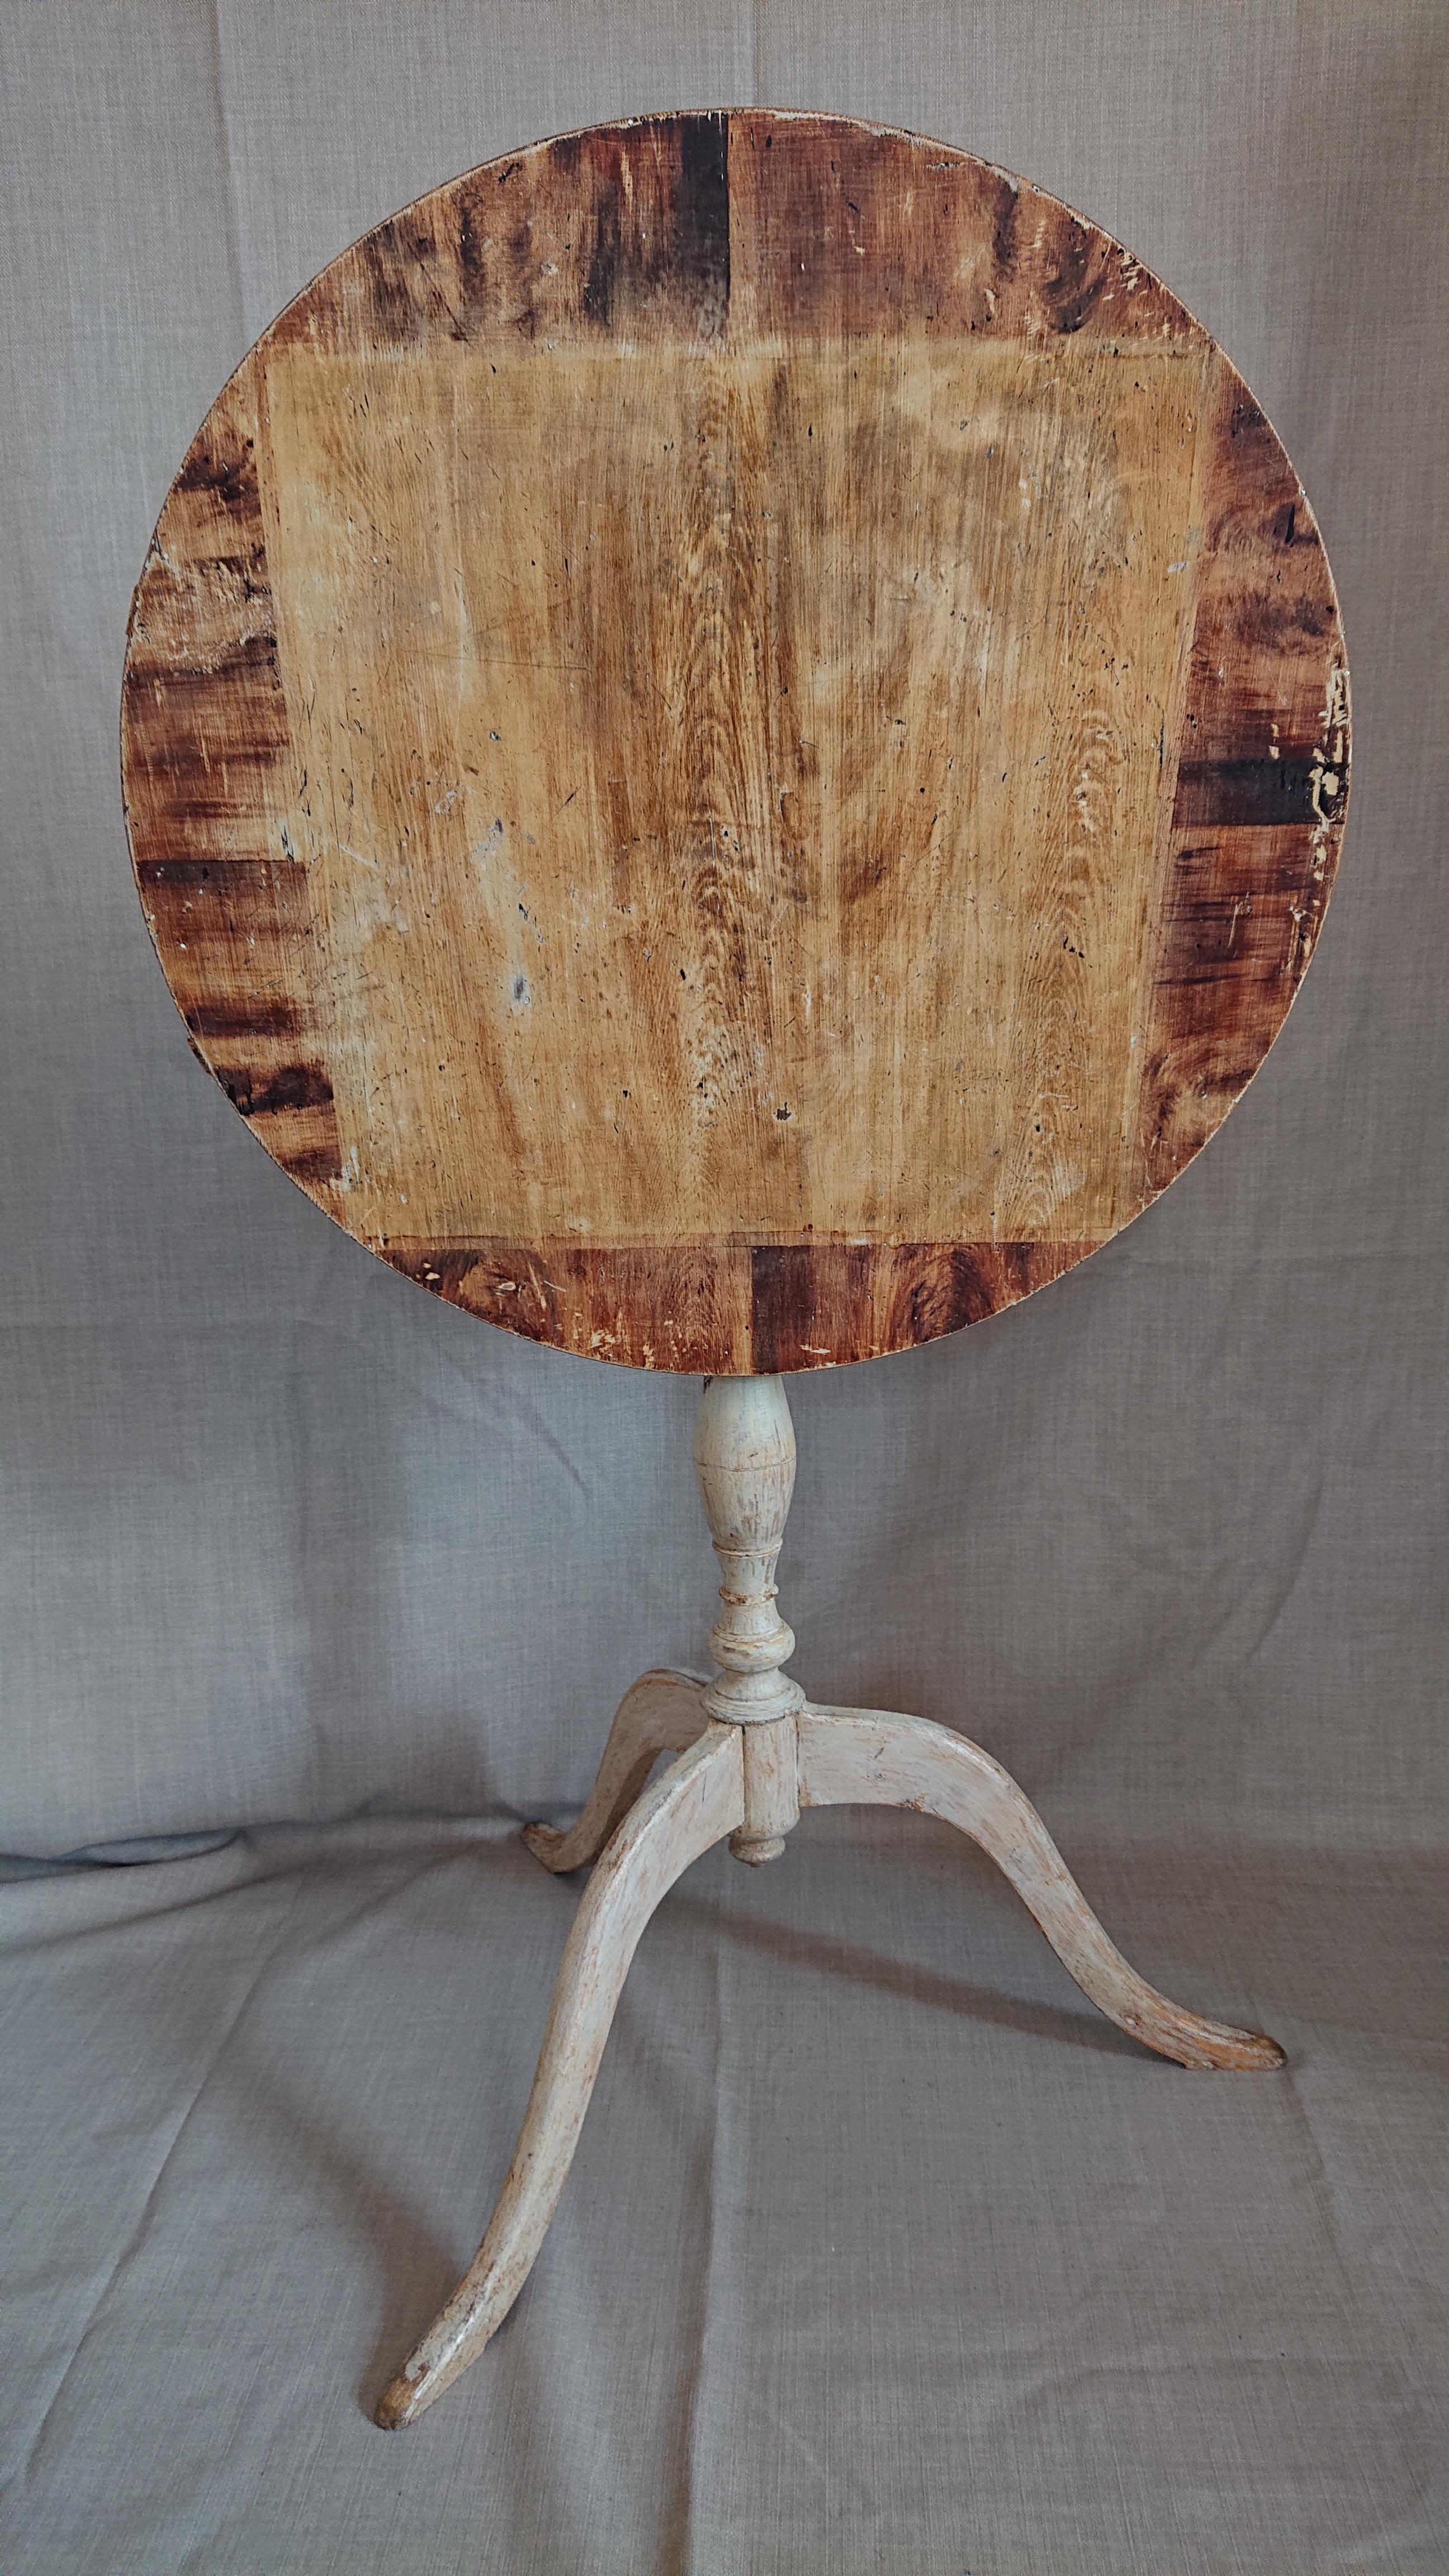 table basculante suédoise du 19ème siècle provenant de Degerbyn Skelleftea Vasterbotten ,Nord de la Suède.
Une table basculante d'une beauté fantastique avec de belles proportions et une peinture imitant le bois sur le dessus. Jolie et agréable